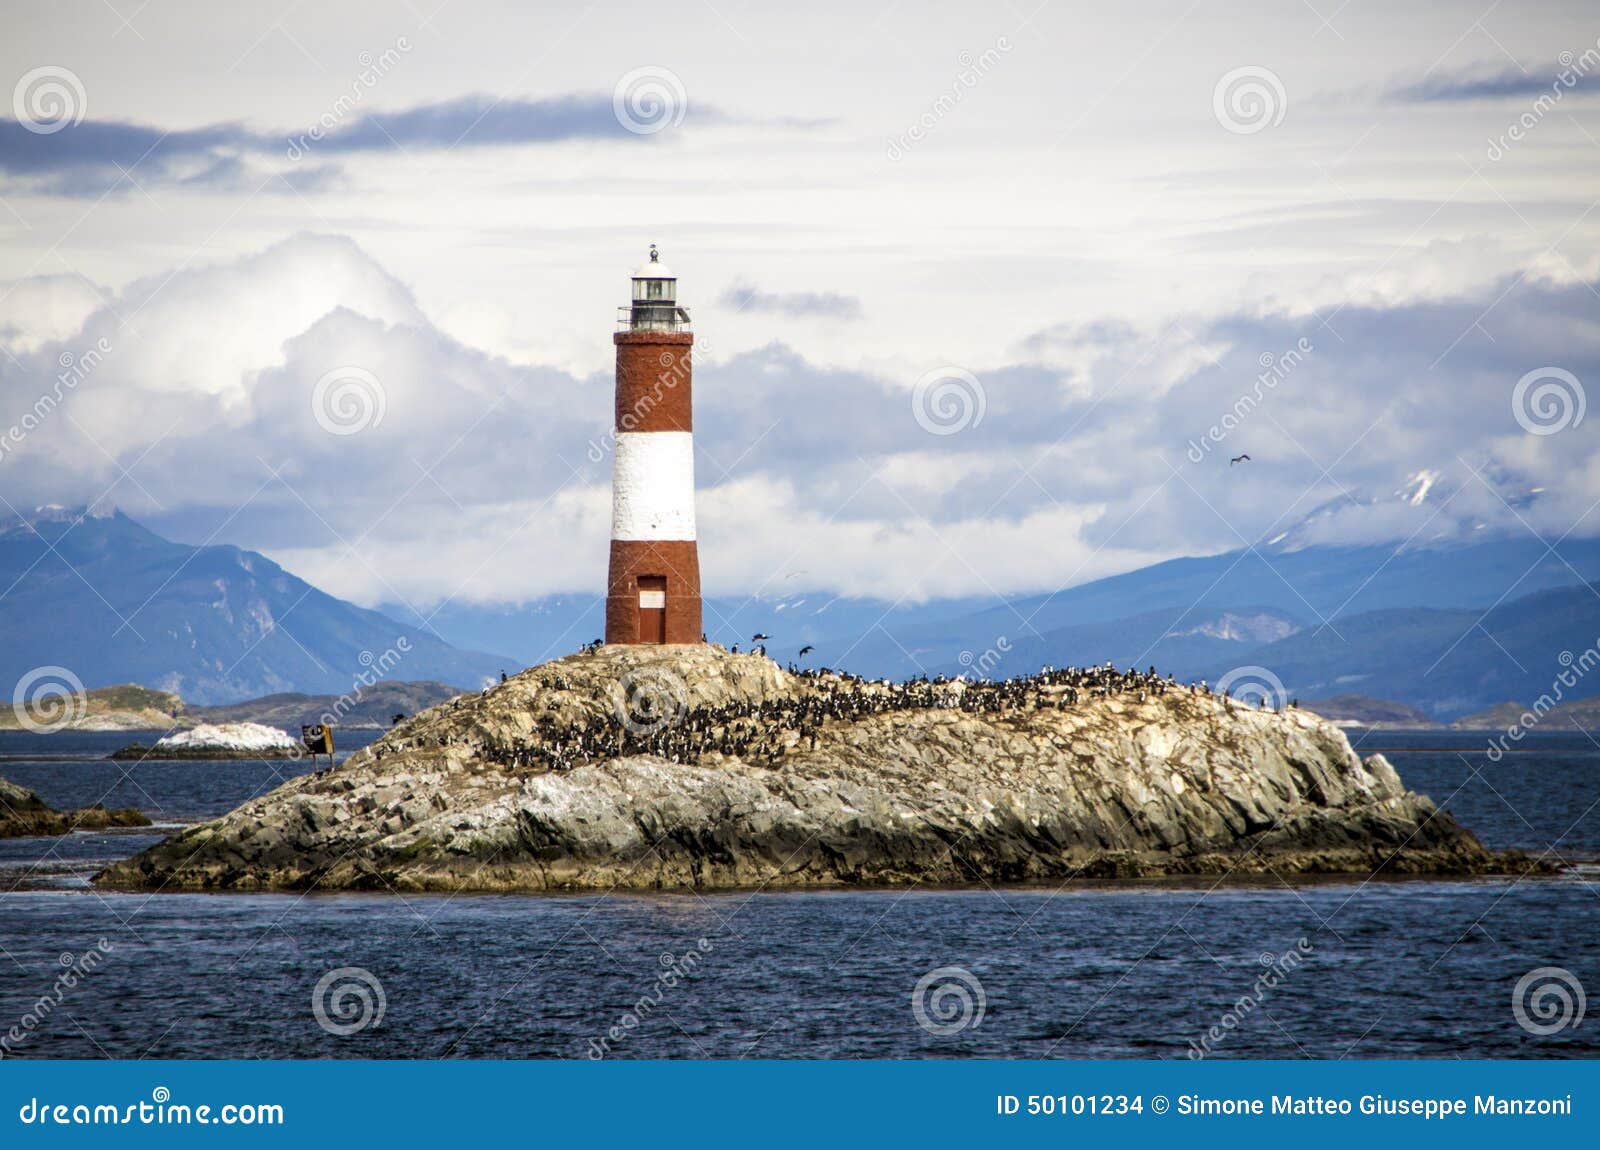 les eclaireurs lighthouse, beagle channel